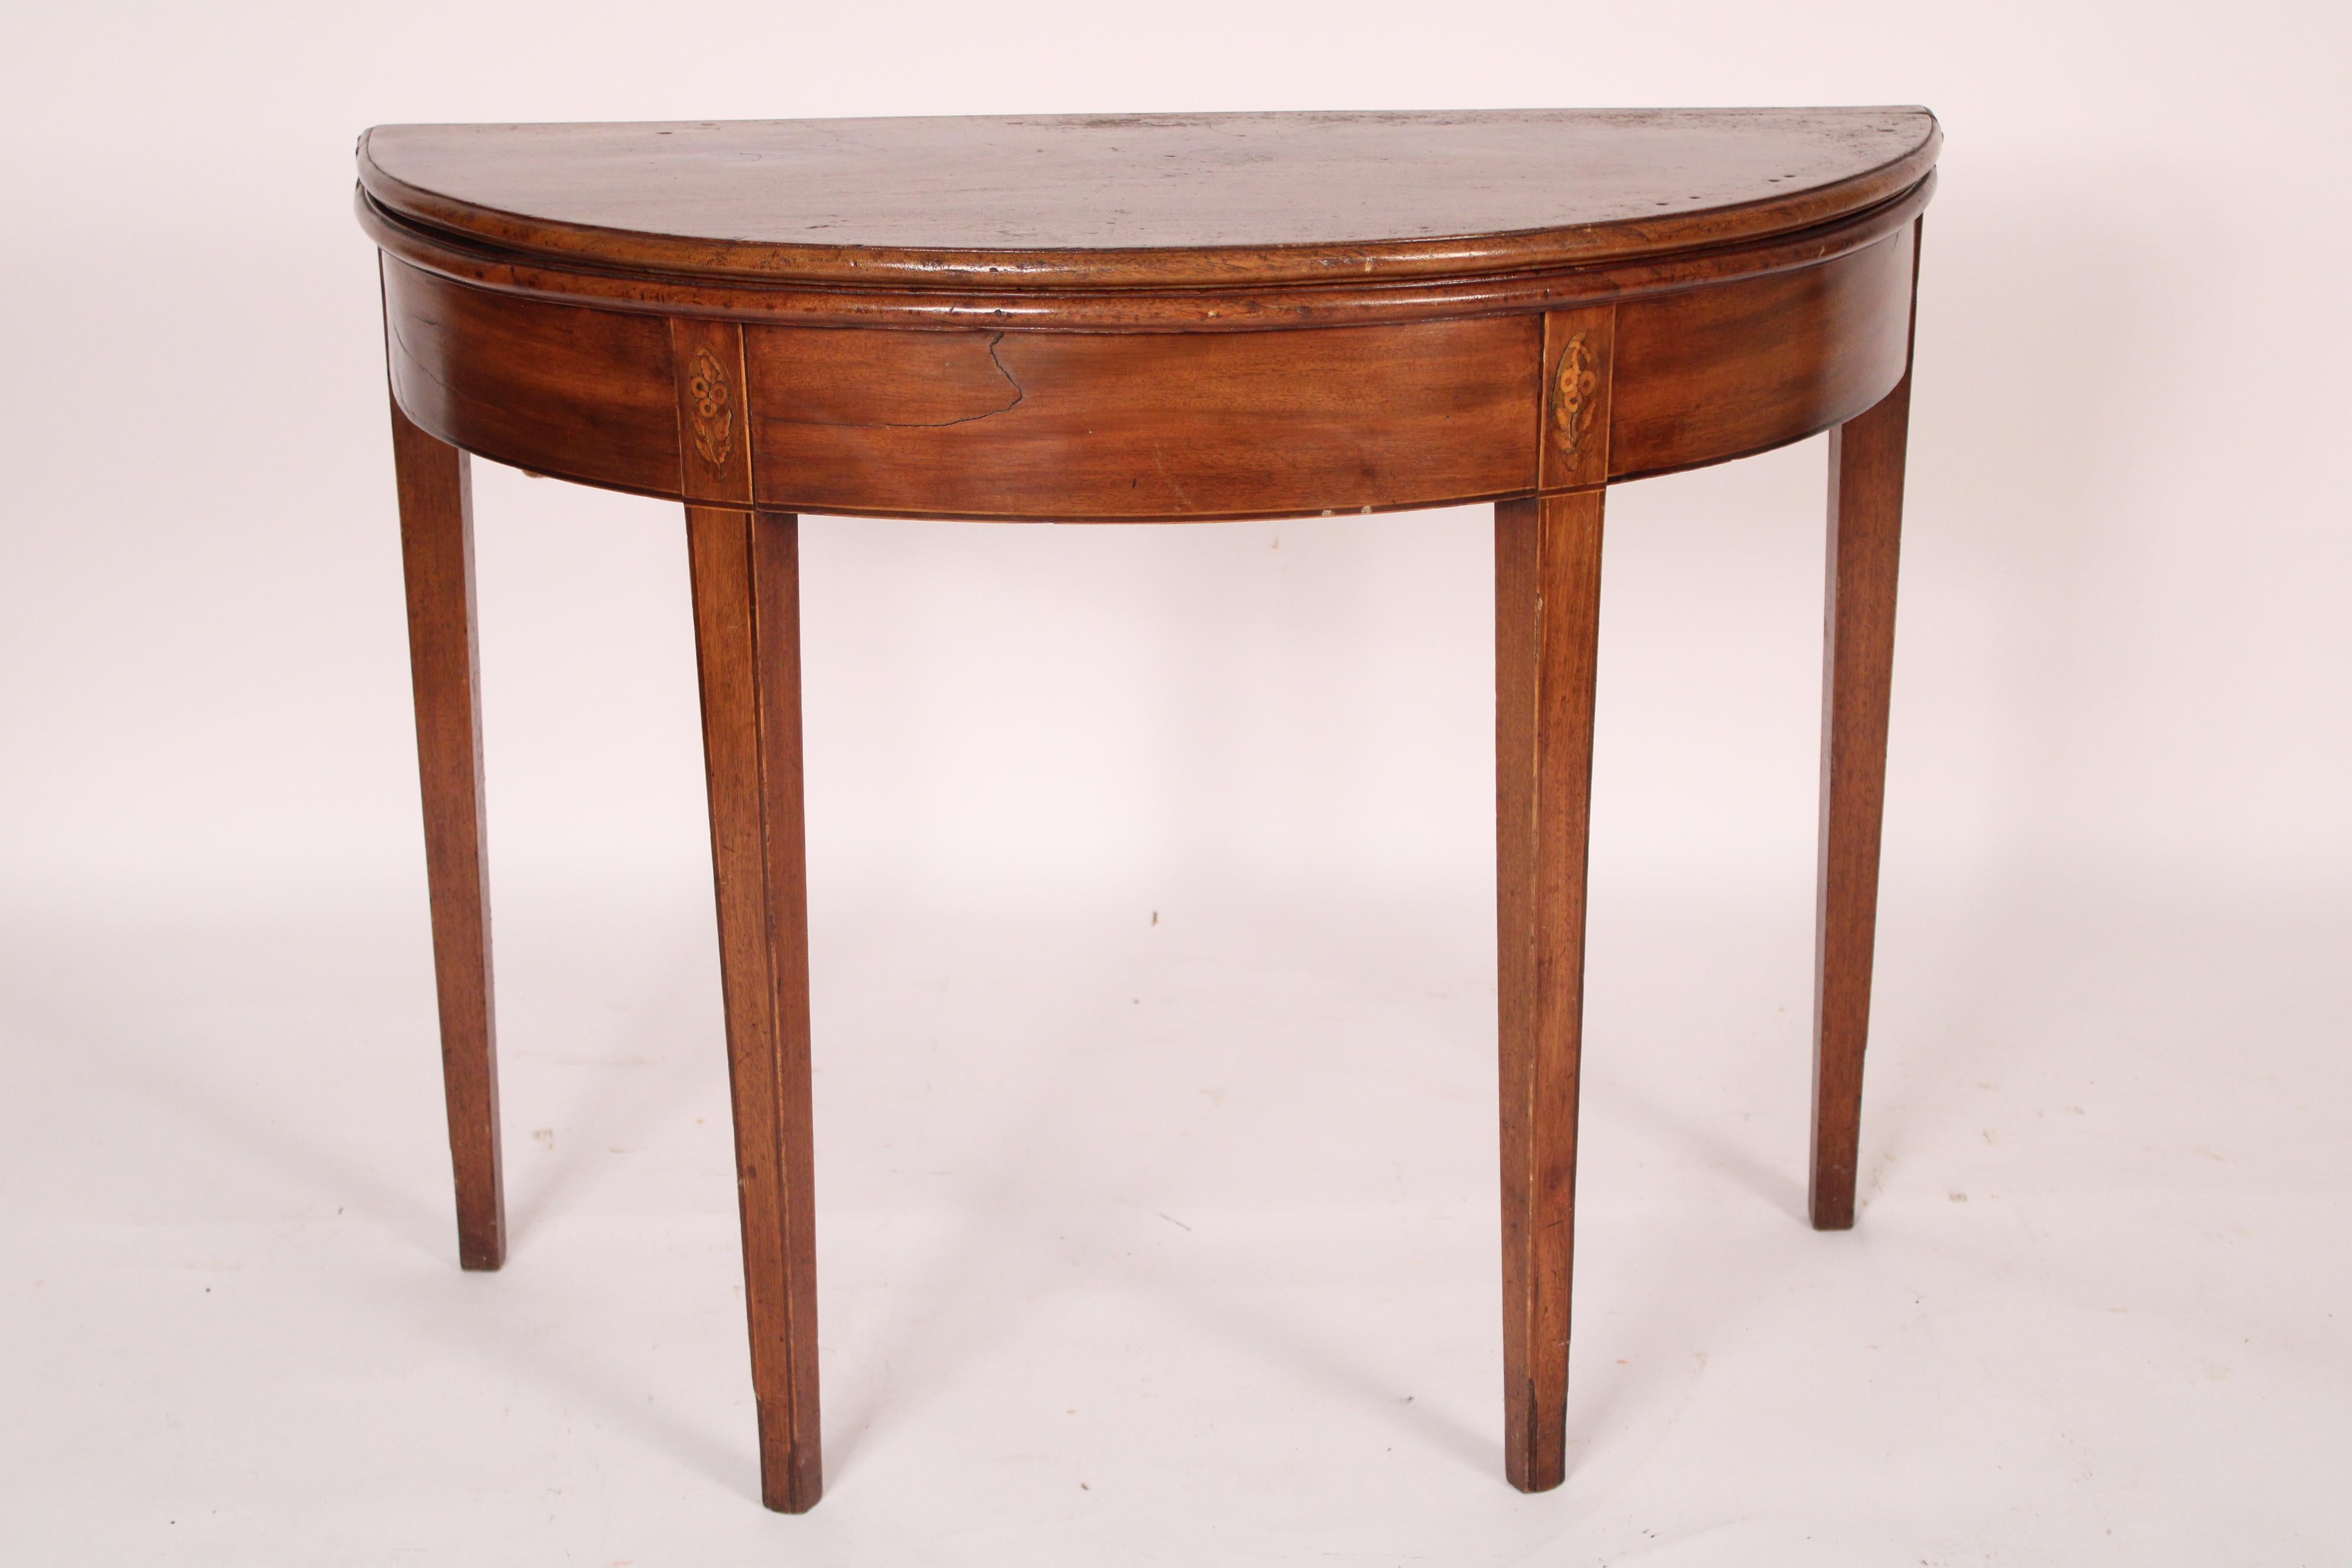 Mahagoni-Demi-Lune-Tisch, George III, um 1800. Mit einem demi lune oben mit geformten Kanten, demi lune geformt Mahagoni Fries, Vorderbeine mit Patera Intarsie an der Spitze der Beine, Beine sind quadratisch und verjüngt mit Linie Intarsie. Die